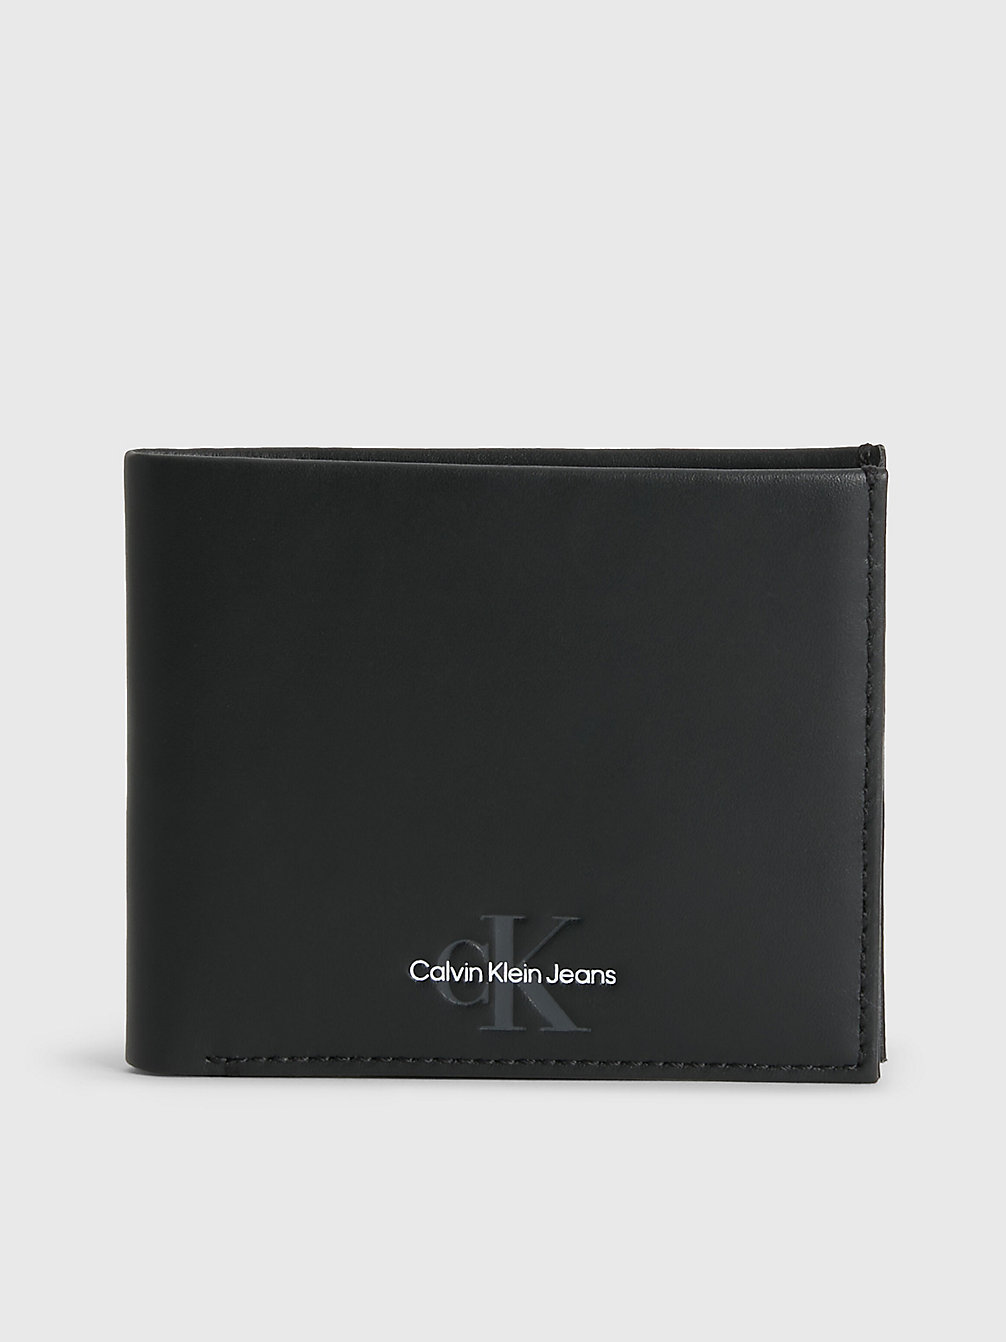 BLACK Leather Slimfold Wallet undefined men Calvin Klein